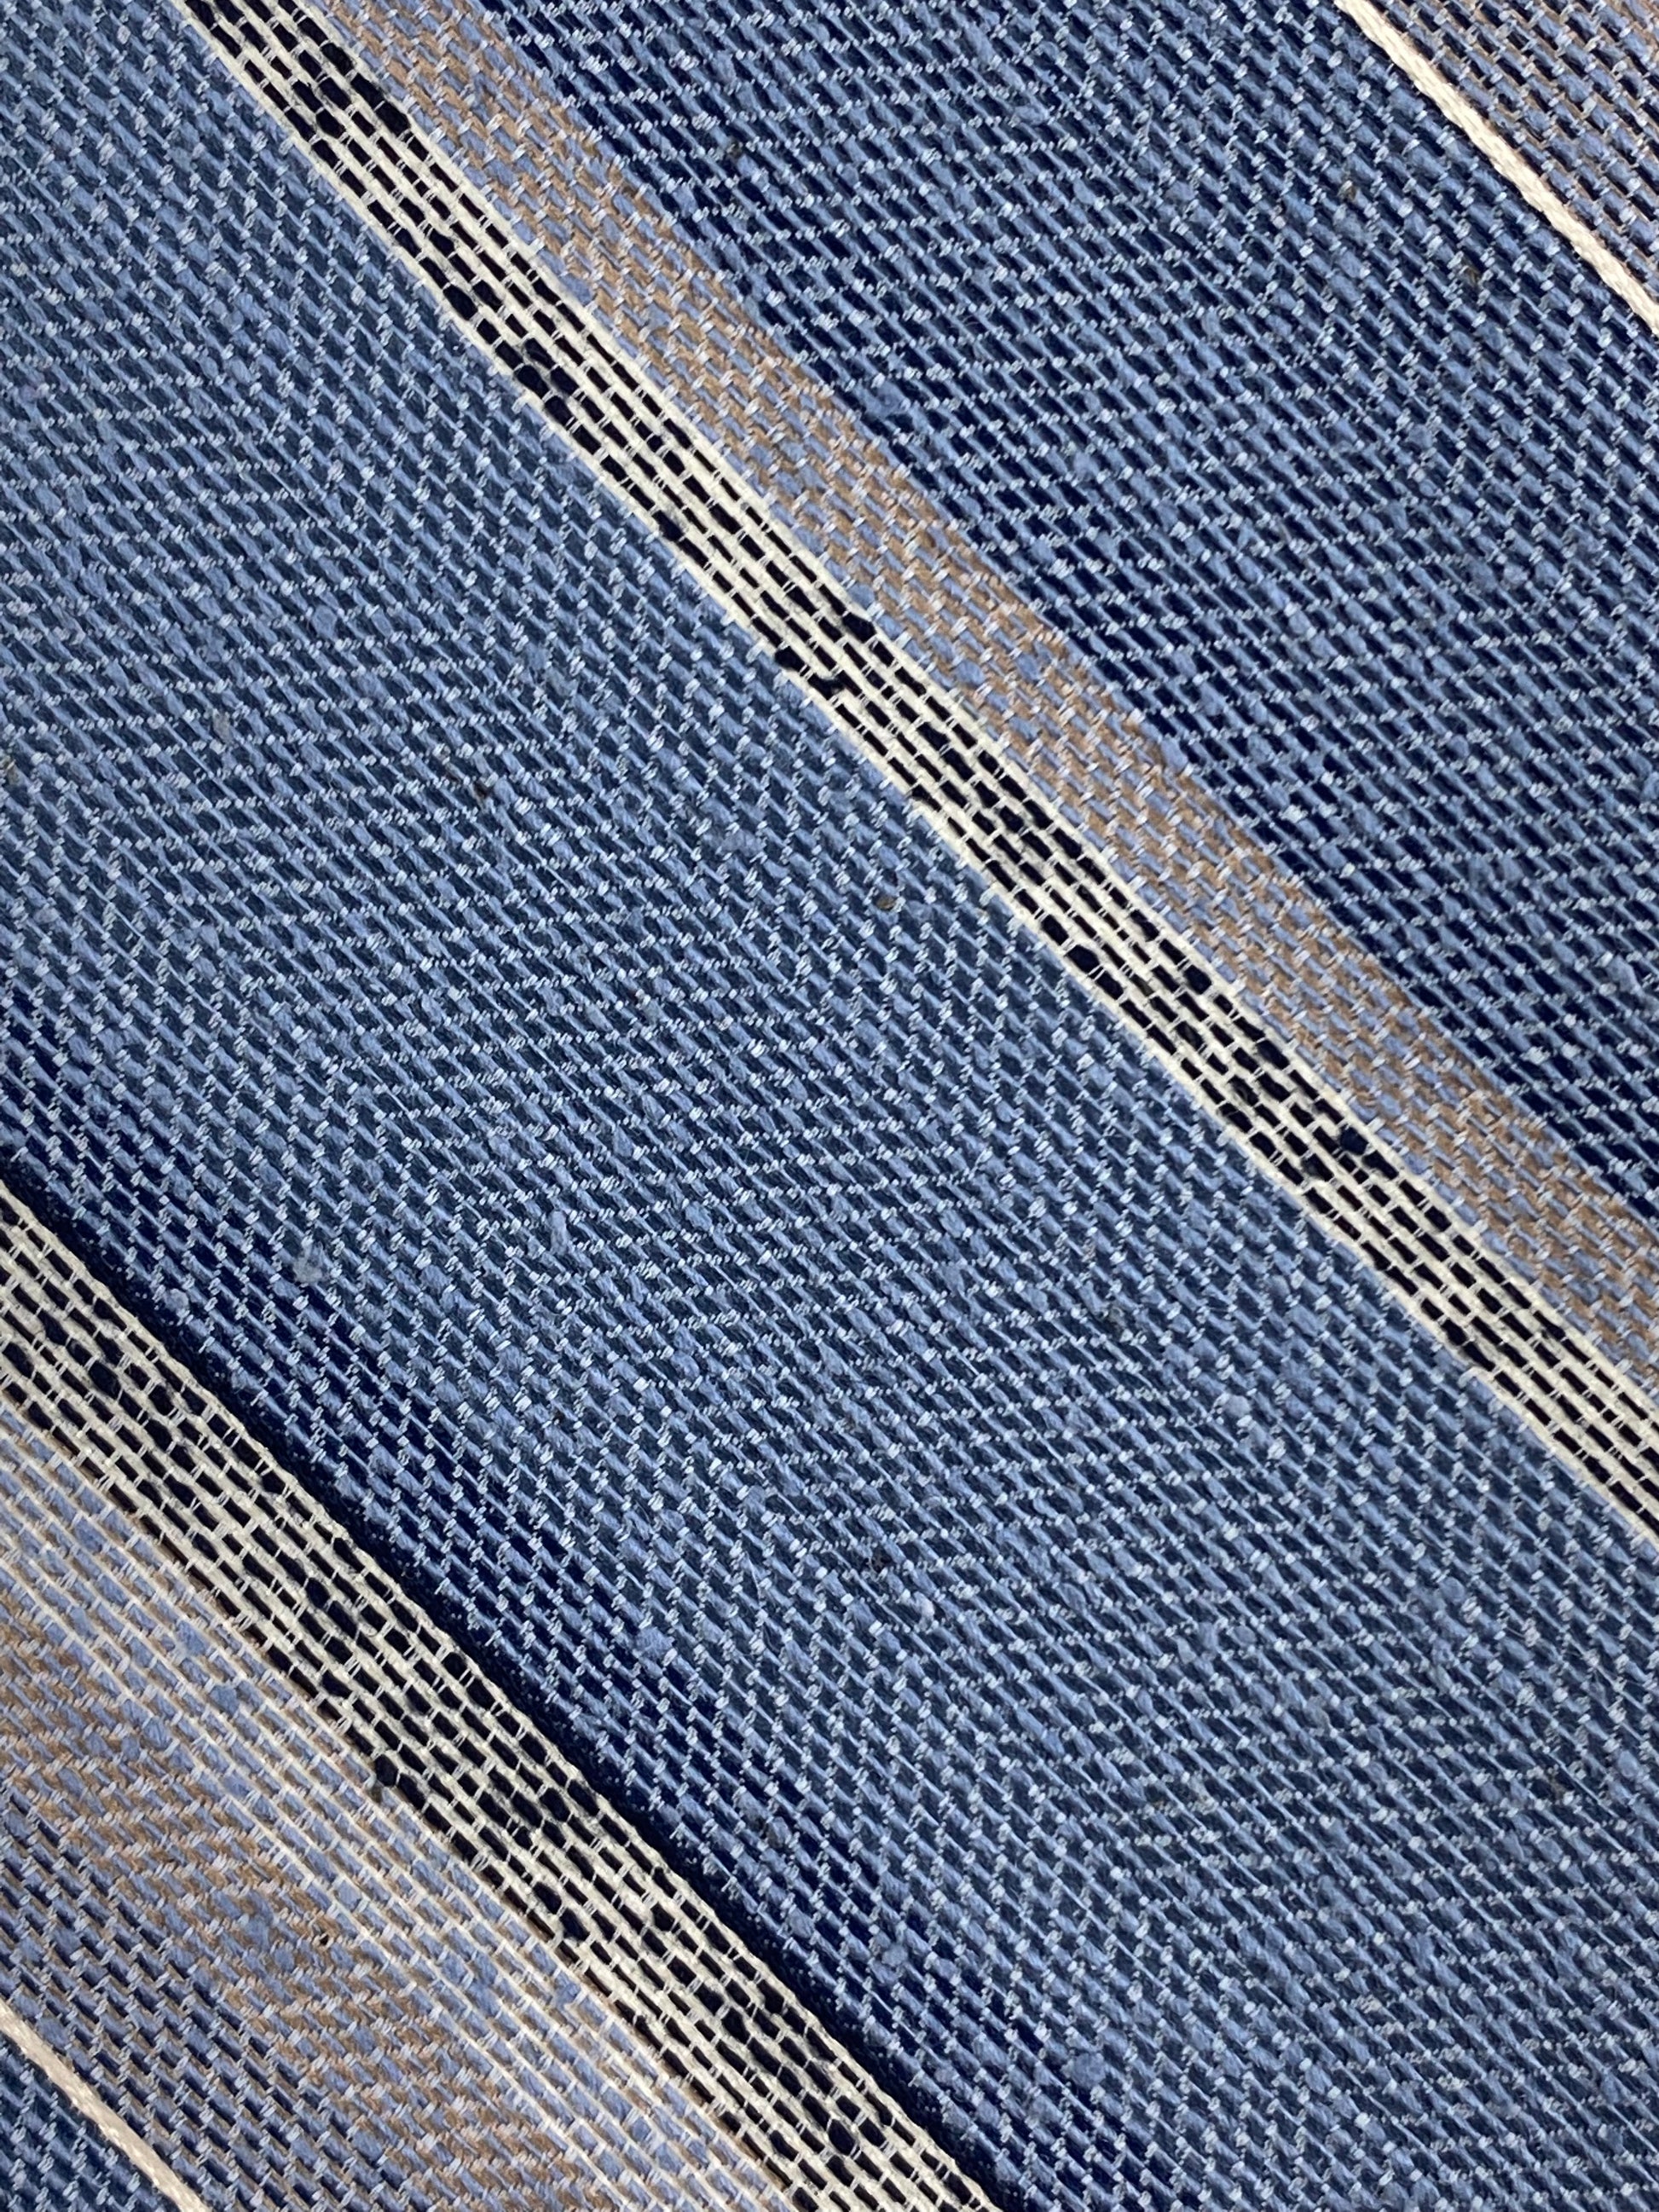 Close-up of: 80s Deadstock Necktie, Men's Vintage Blue Grey Diagonal Stripe Tie, NOS